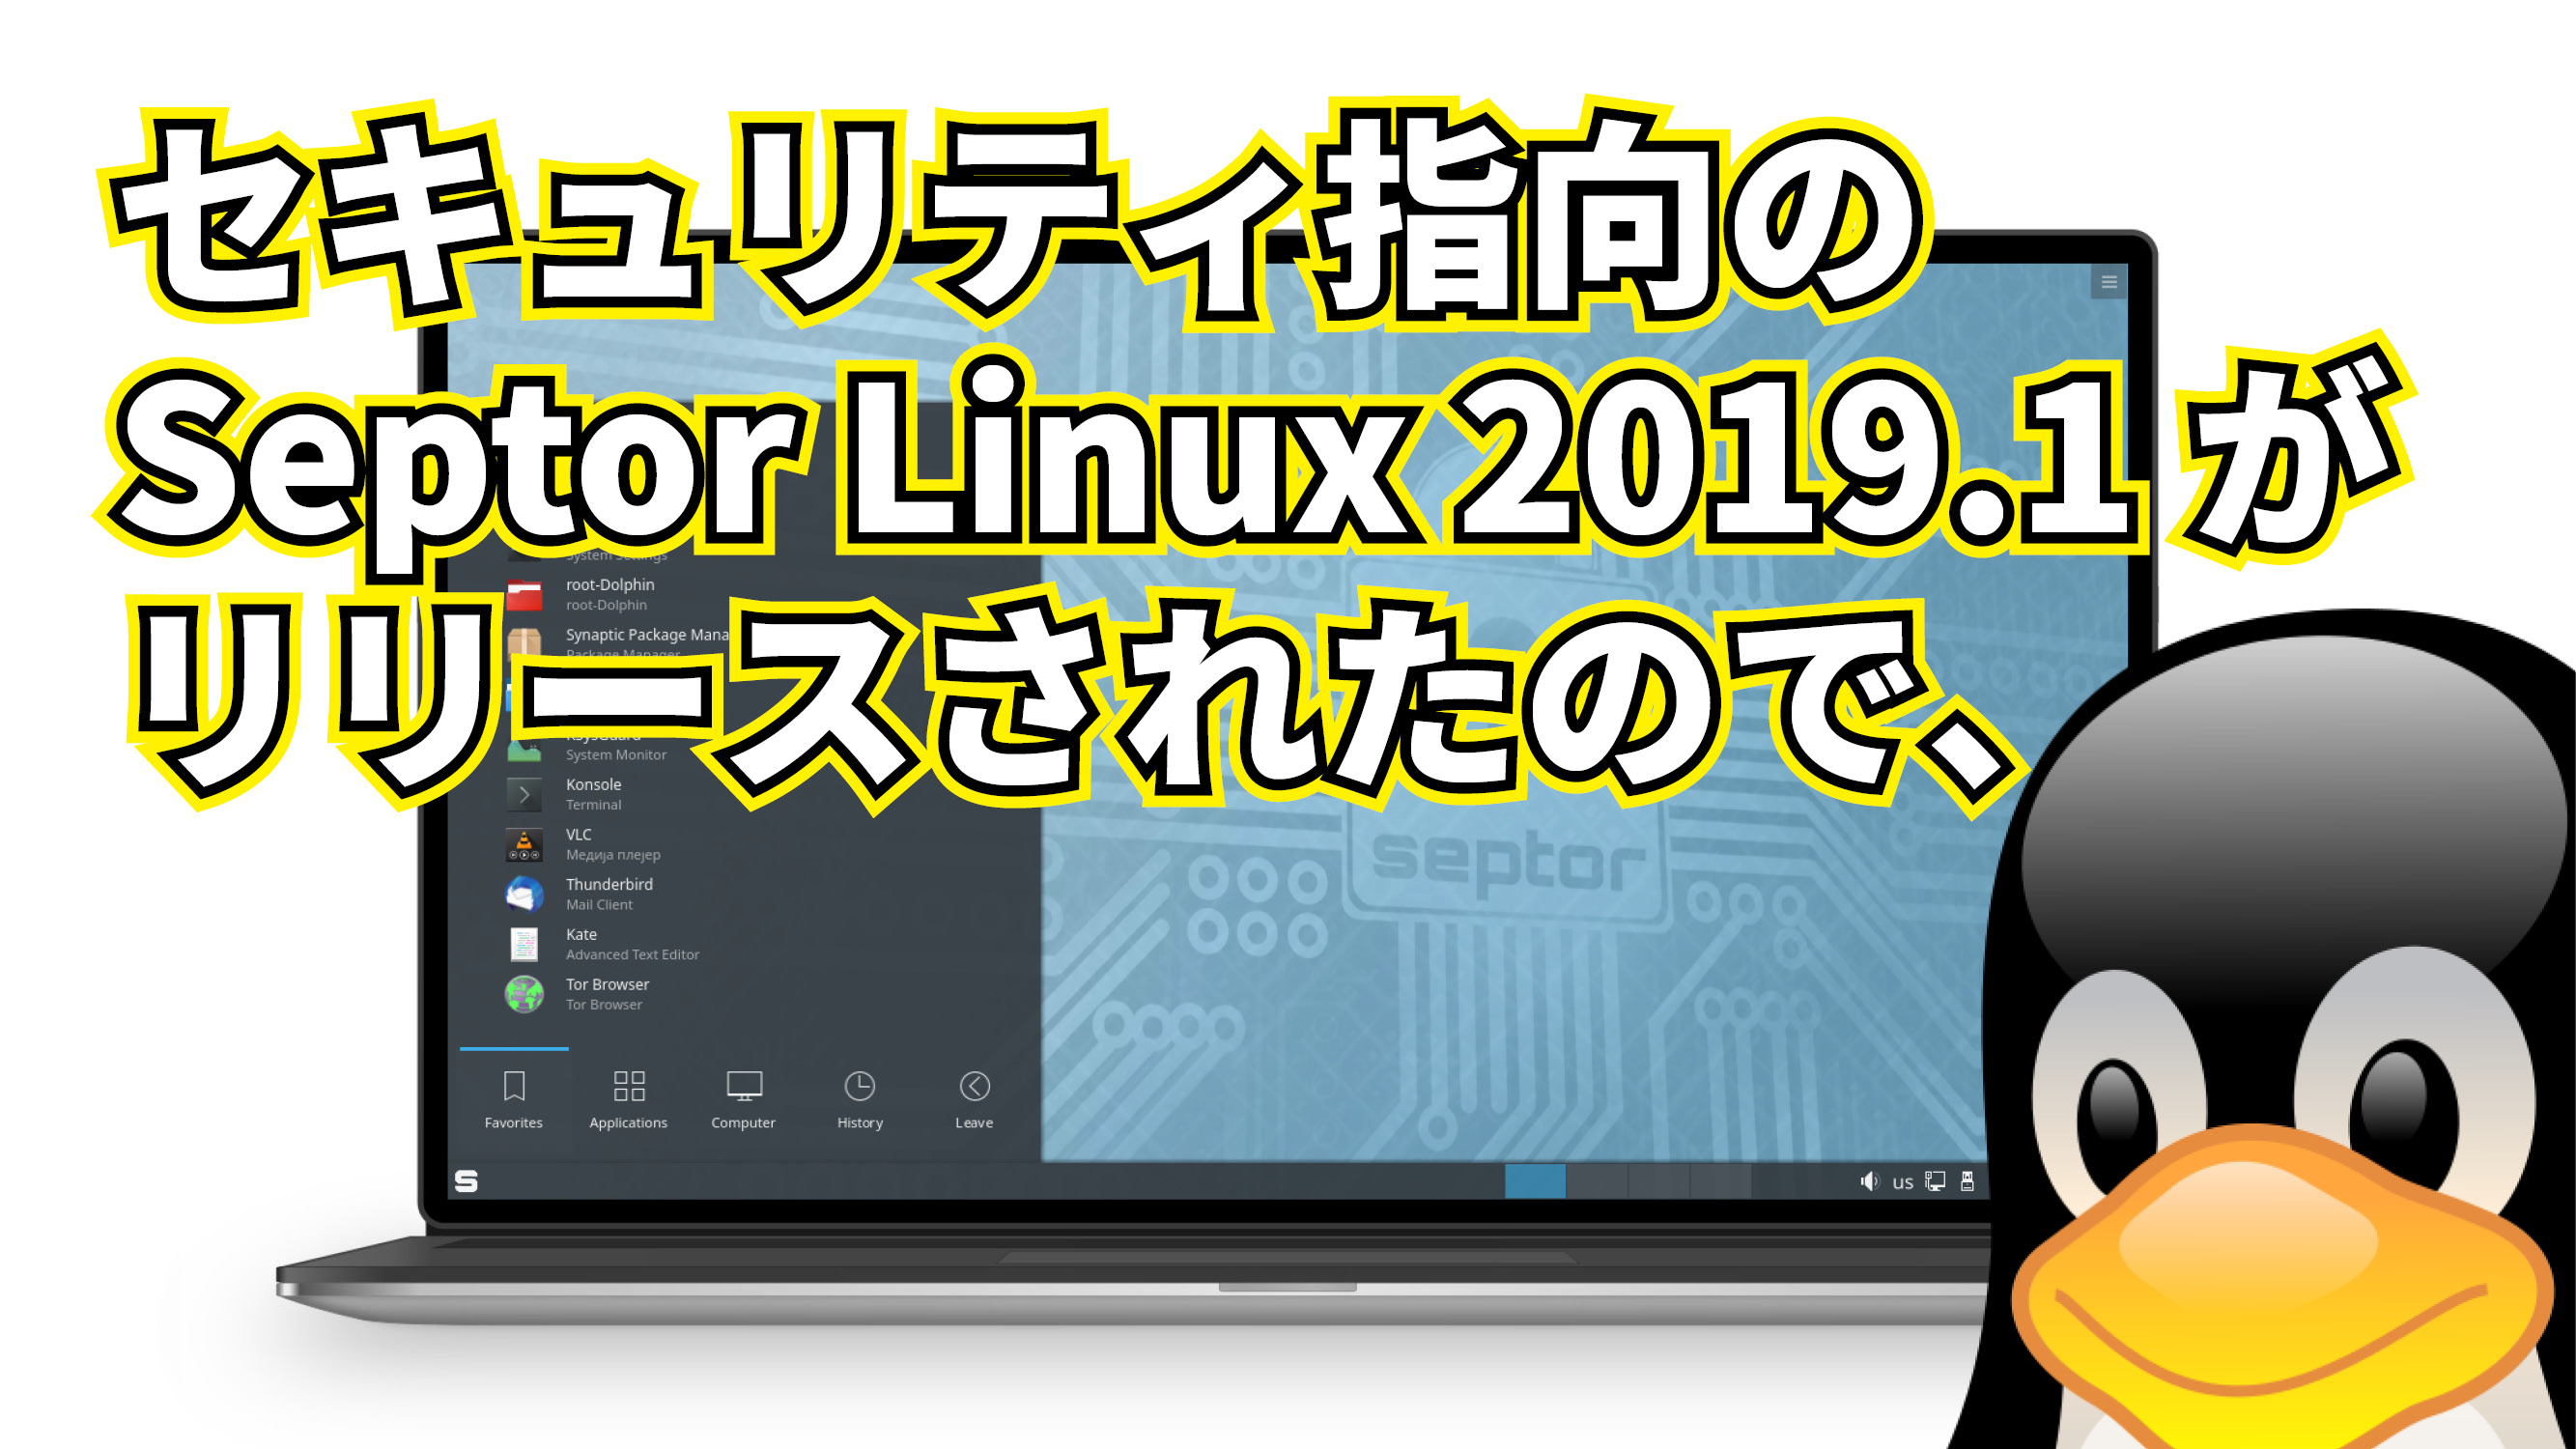 セキュリティ指向のDebian系ディストリビューション Septor Linux 2019.1 がリリースされたので、